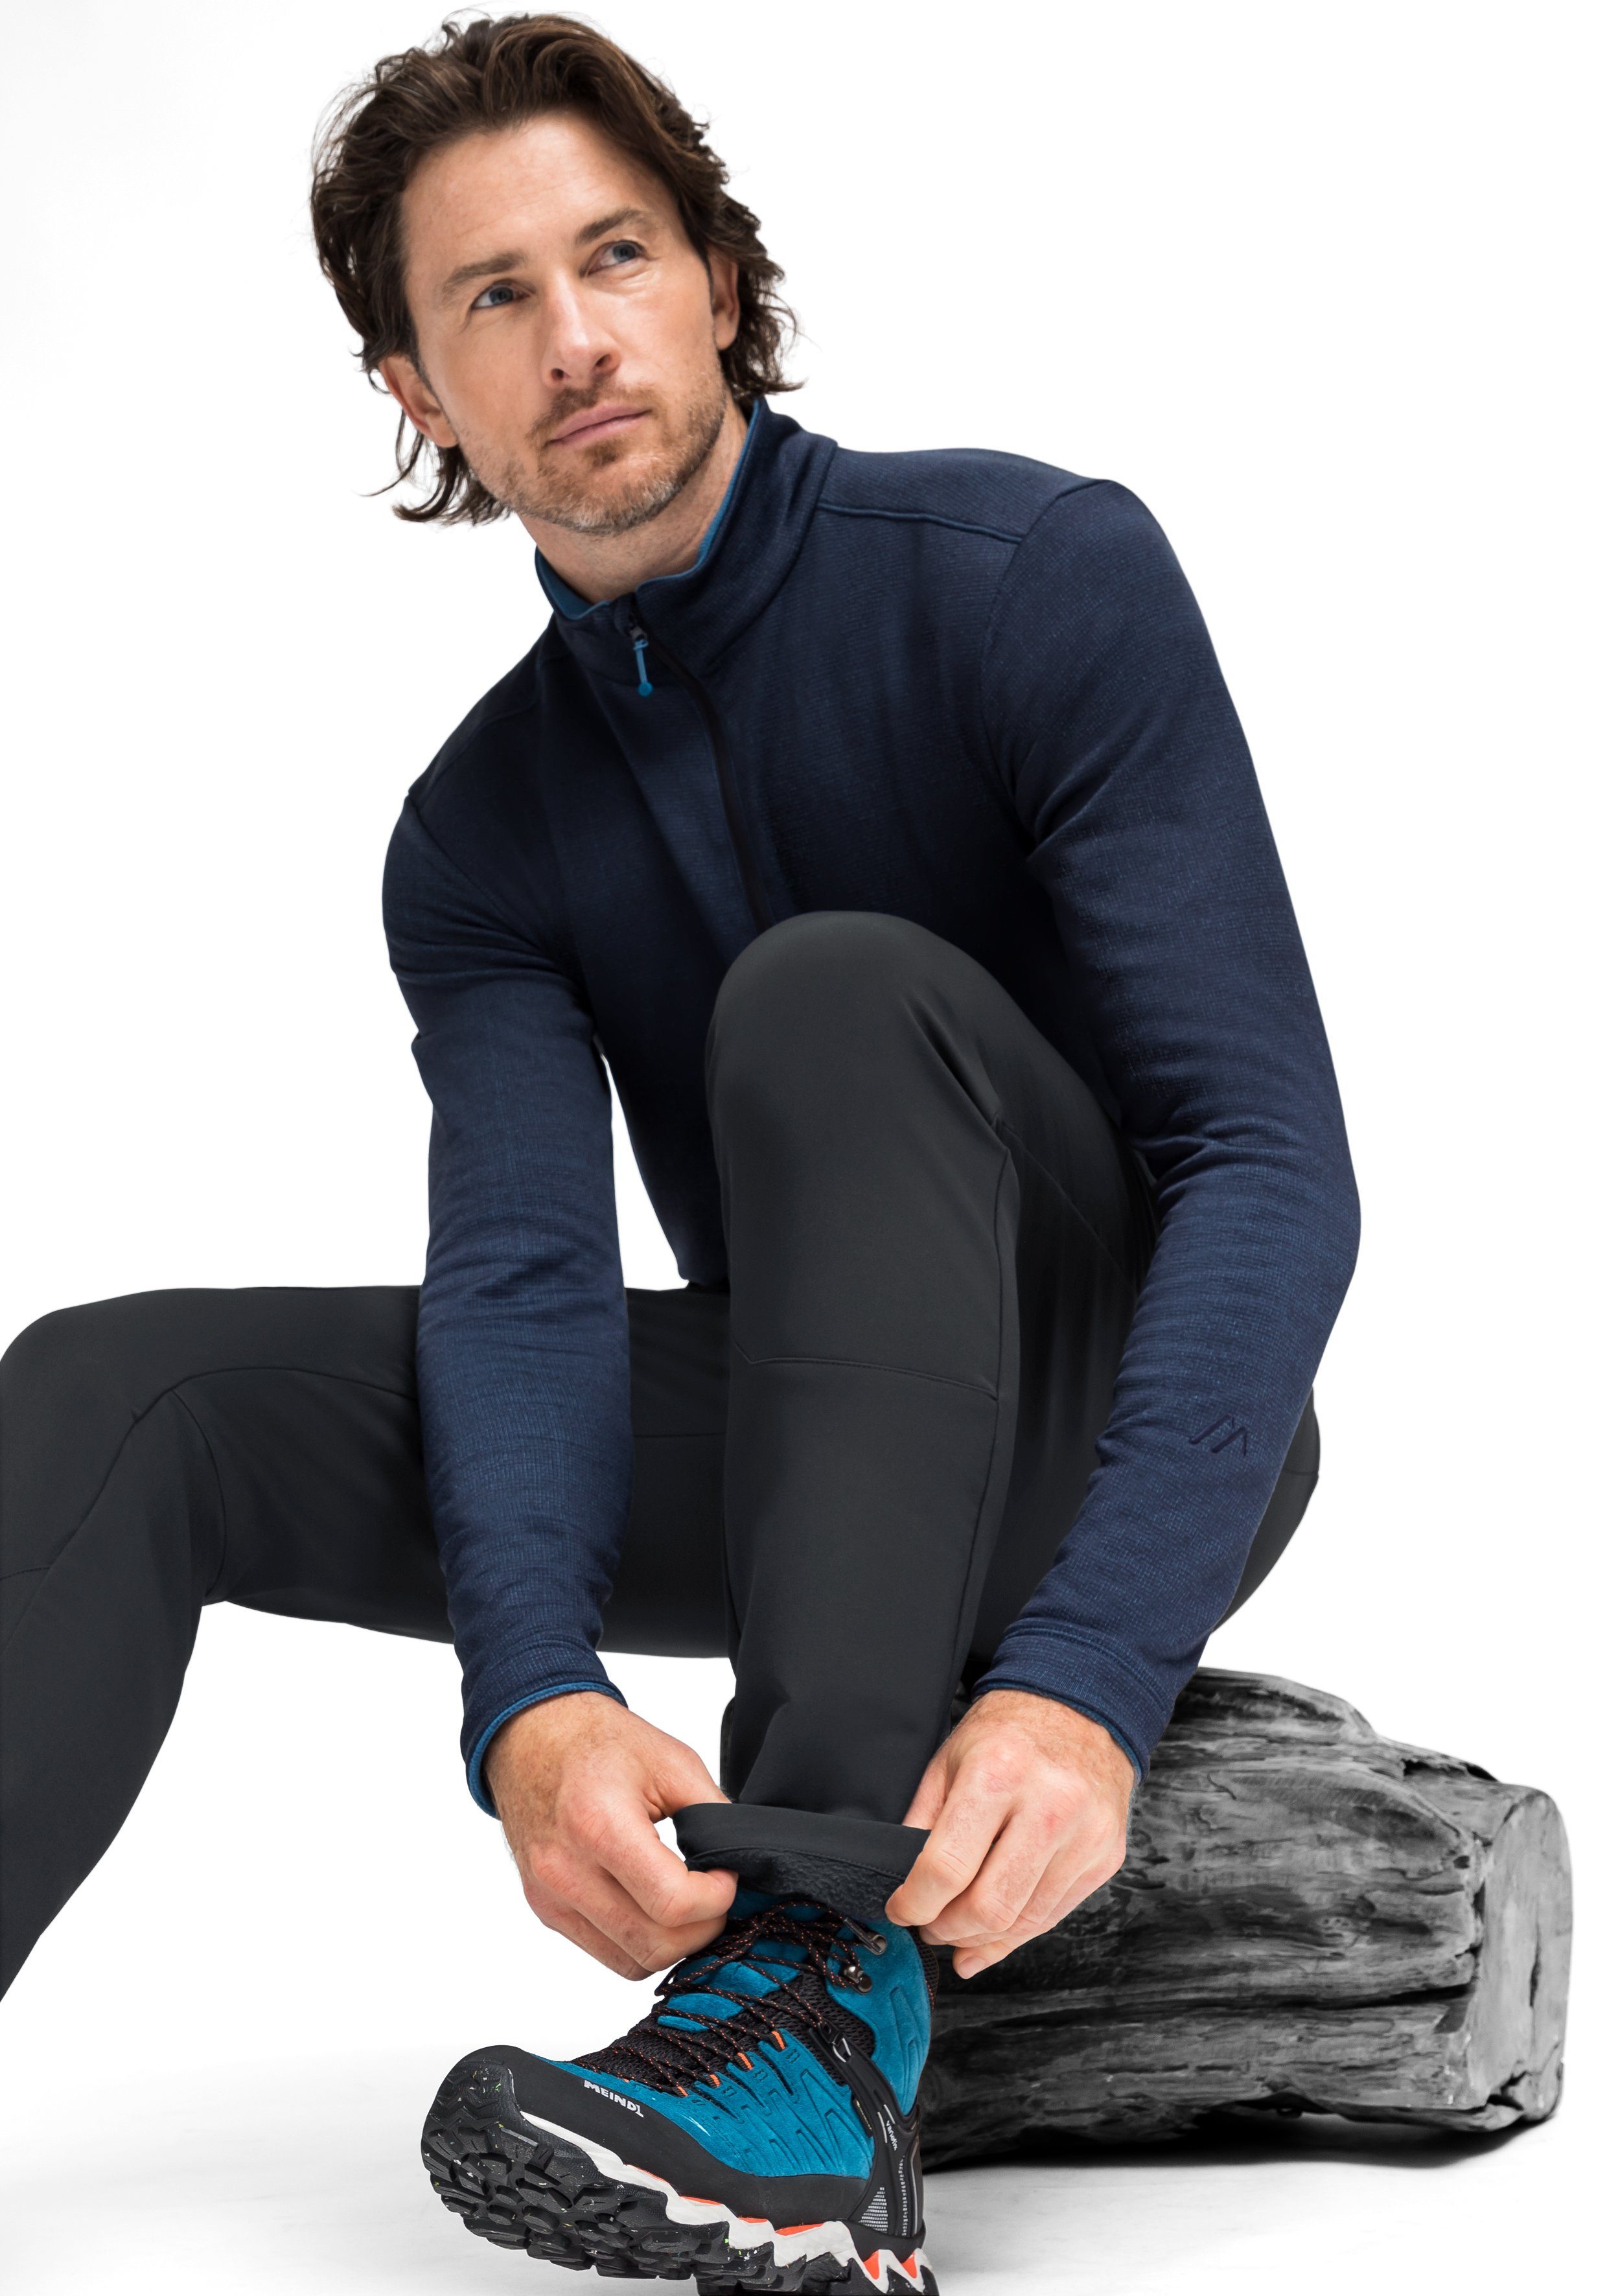 Funktionshose modernen Foidit M Warme, elastische schwarz Maier Look im cleanen Sports Outdoorhose